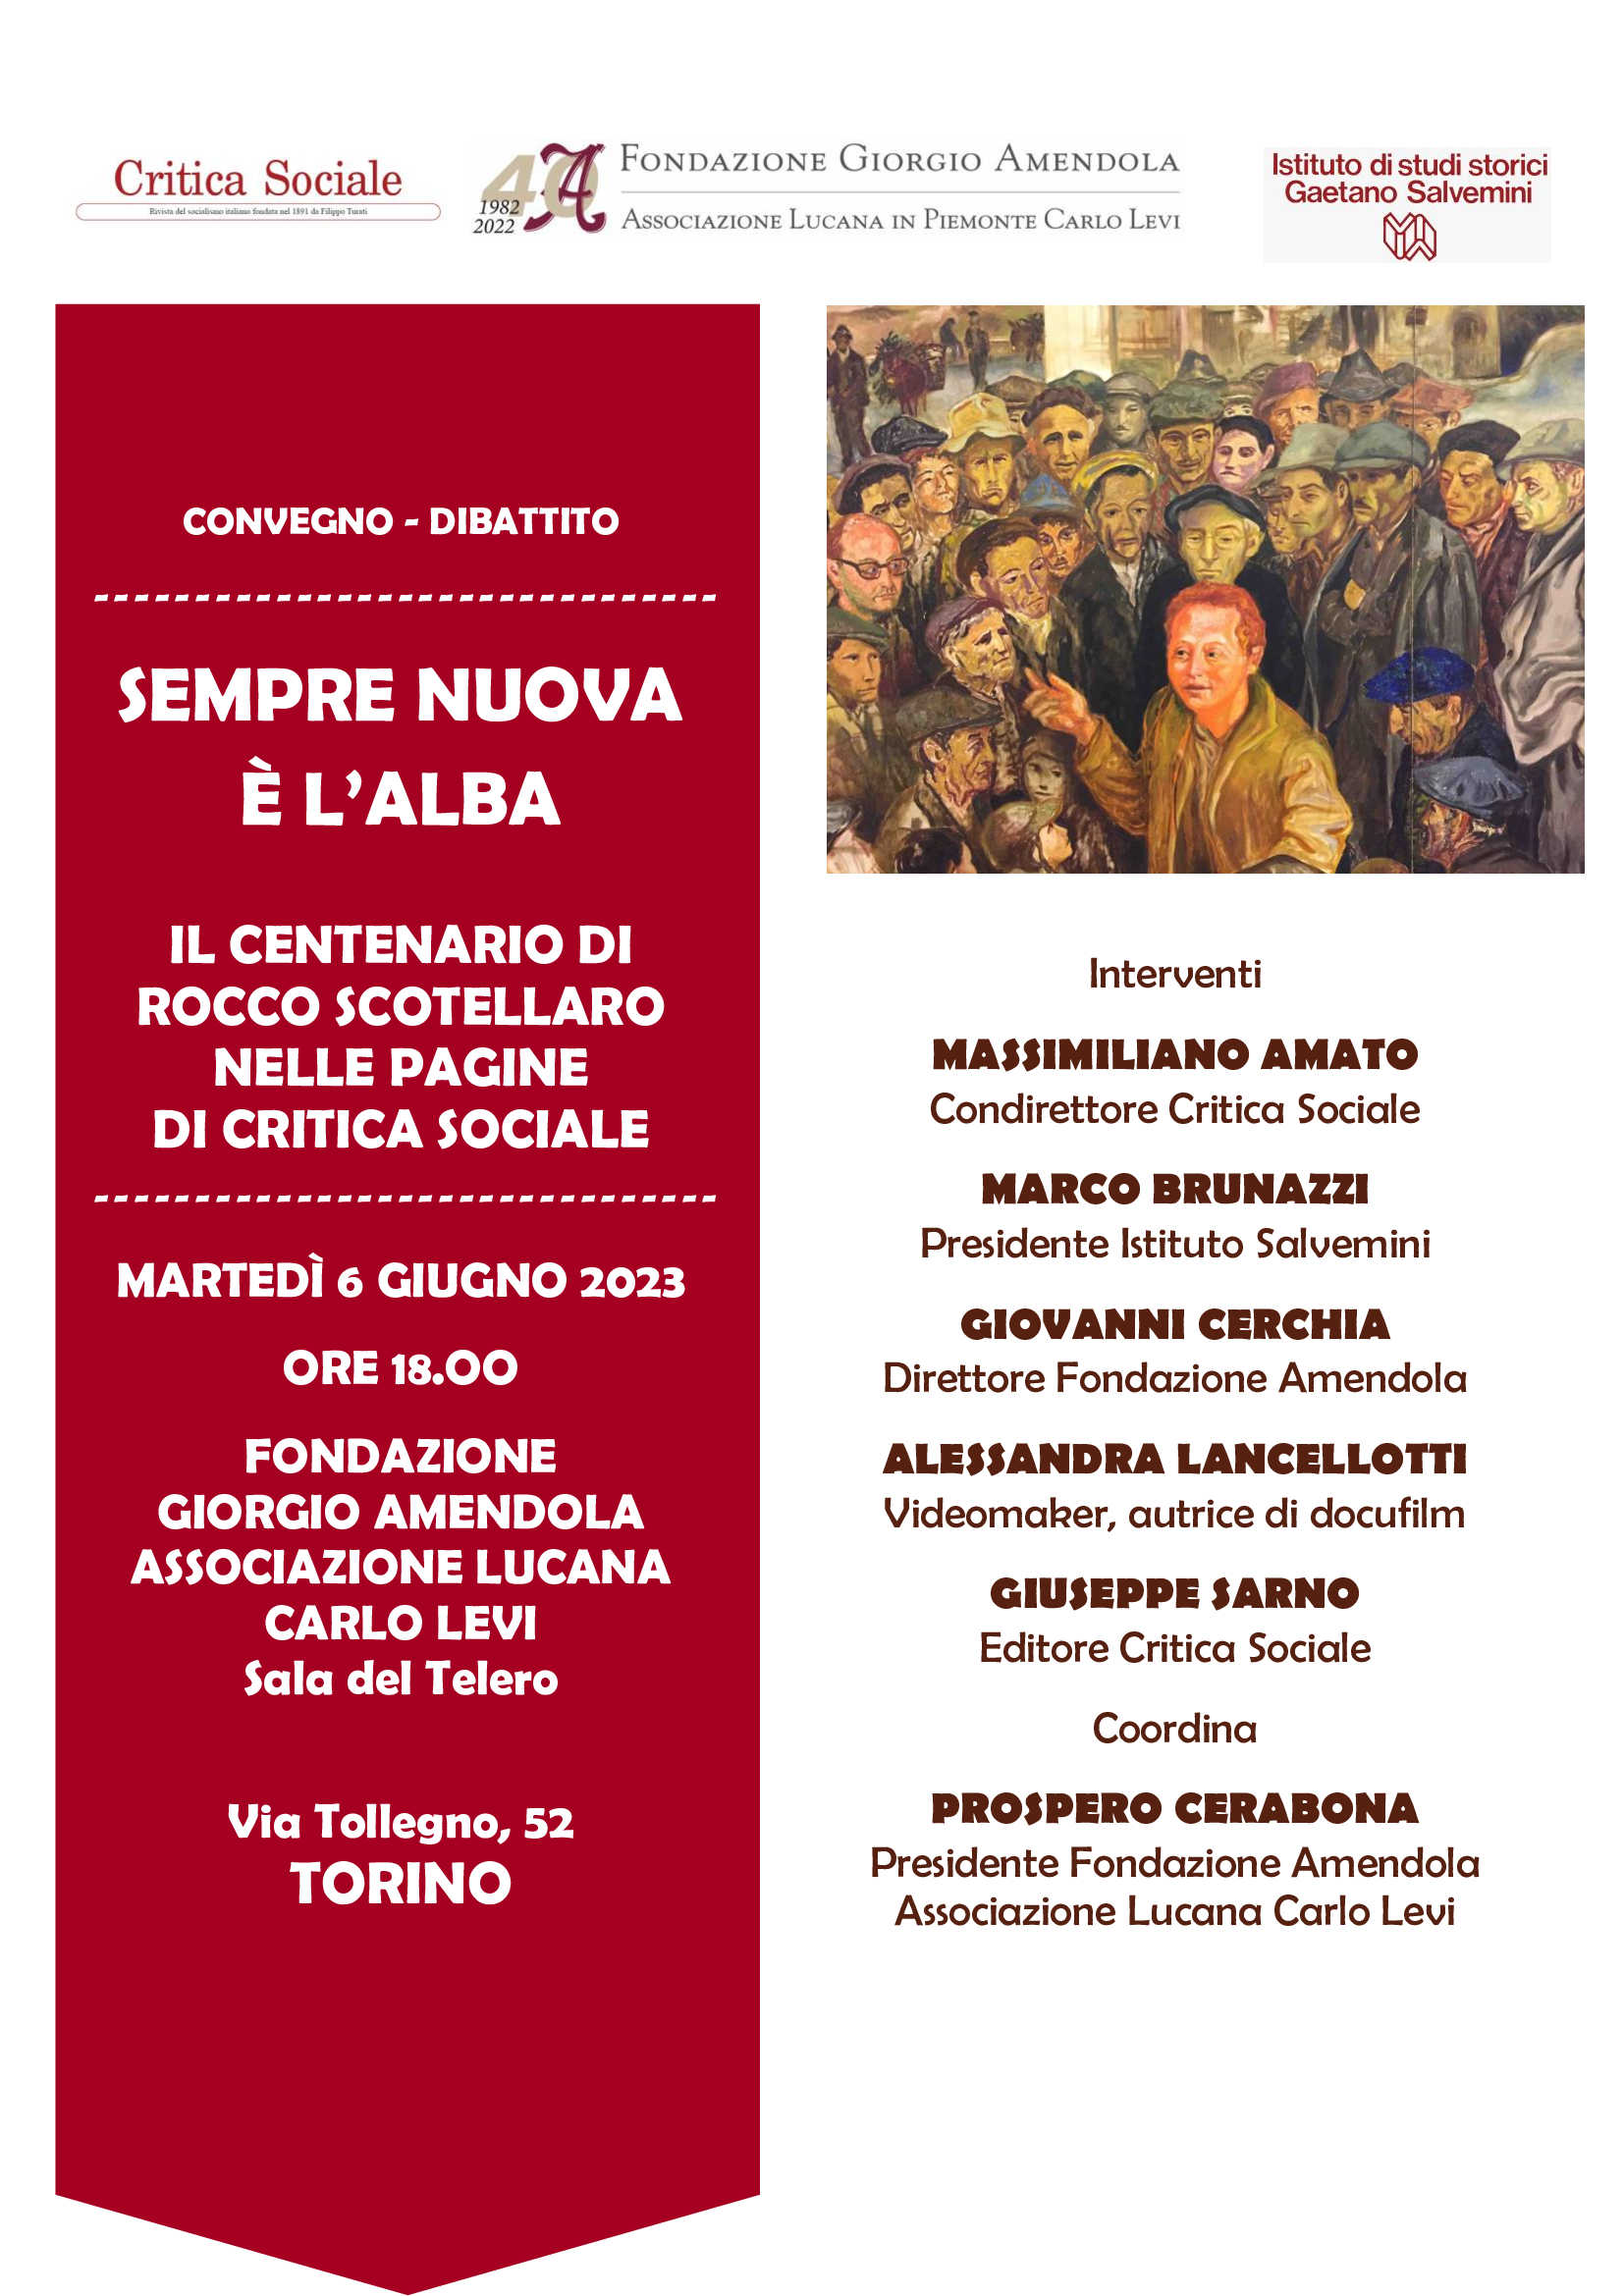 La monografia su Scotellaro il 6 giugno a Torino nella sala del Telero della Fondazione Amendola